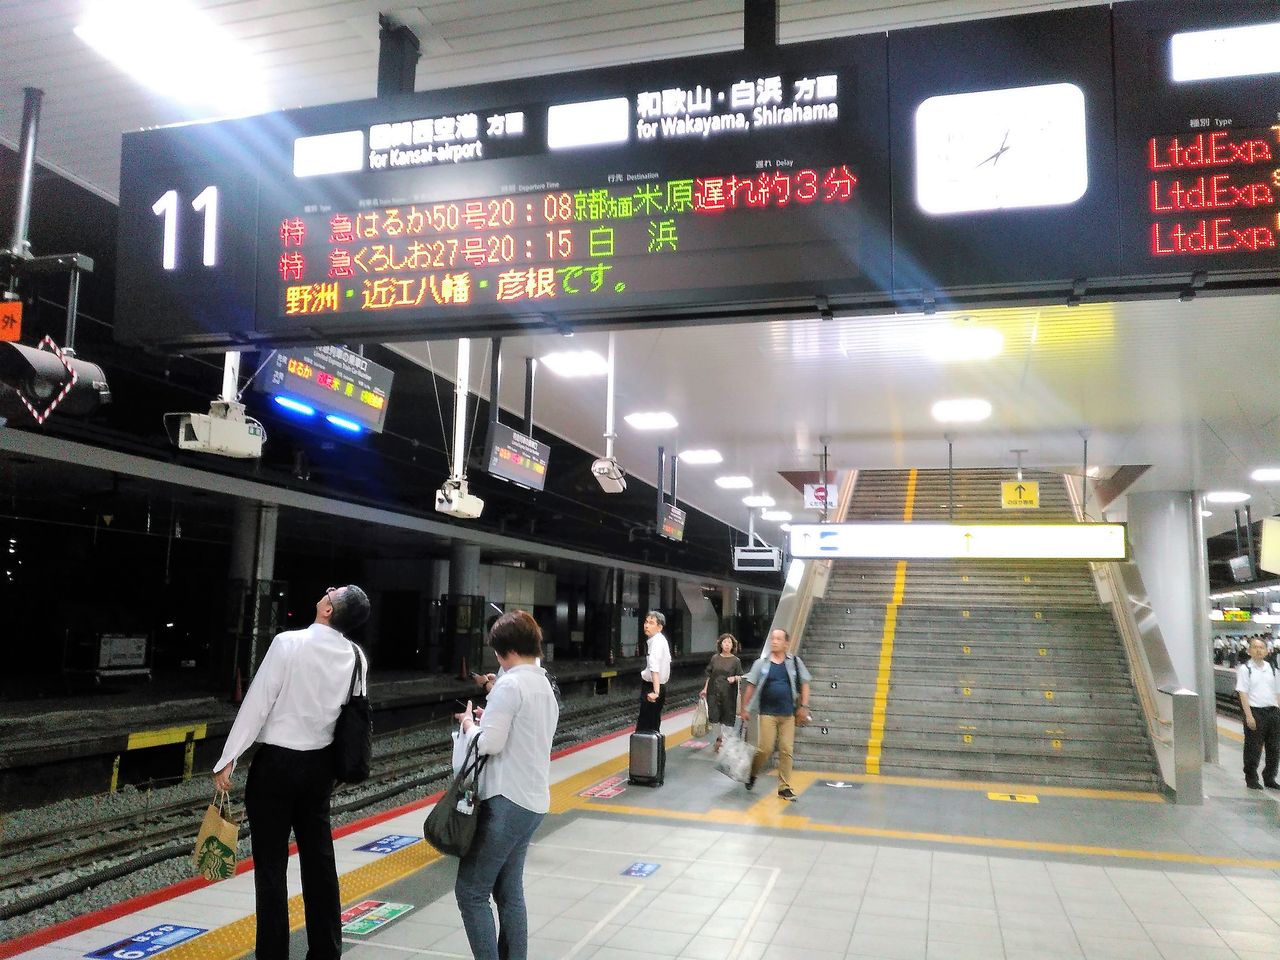 通勤利用もできる はるか50号 自由席に新大阪から近江八幡まで乗車してきました 通勤ライナーを抜本的拡充して 圧倒的多くの乗客に快適通勤を